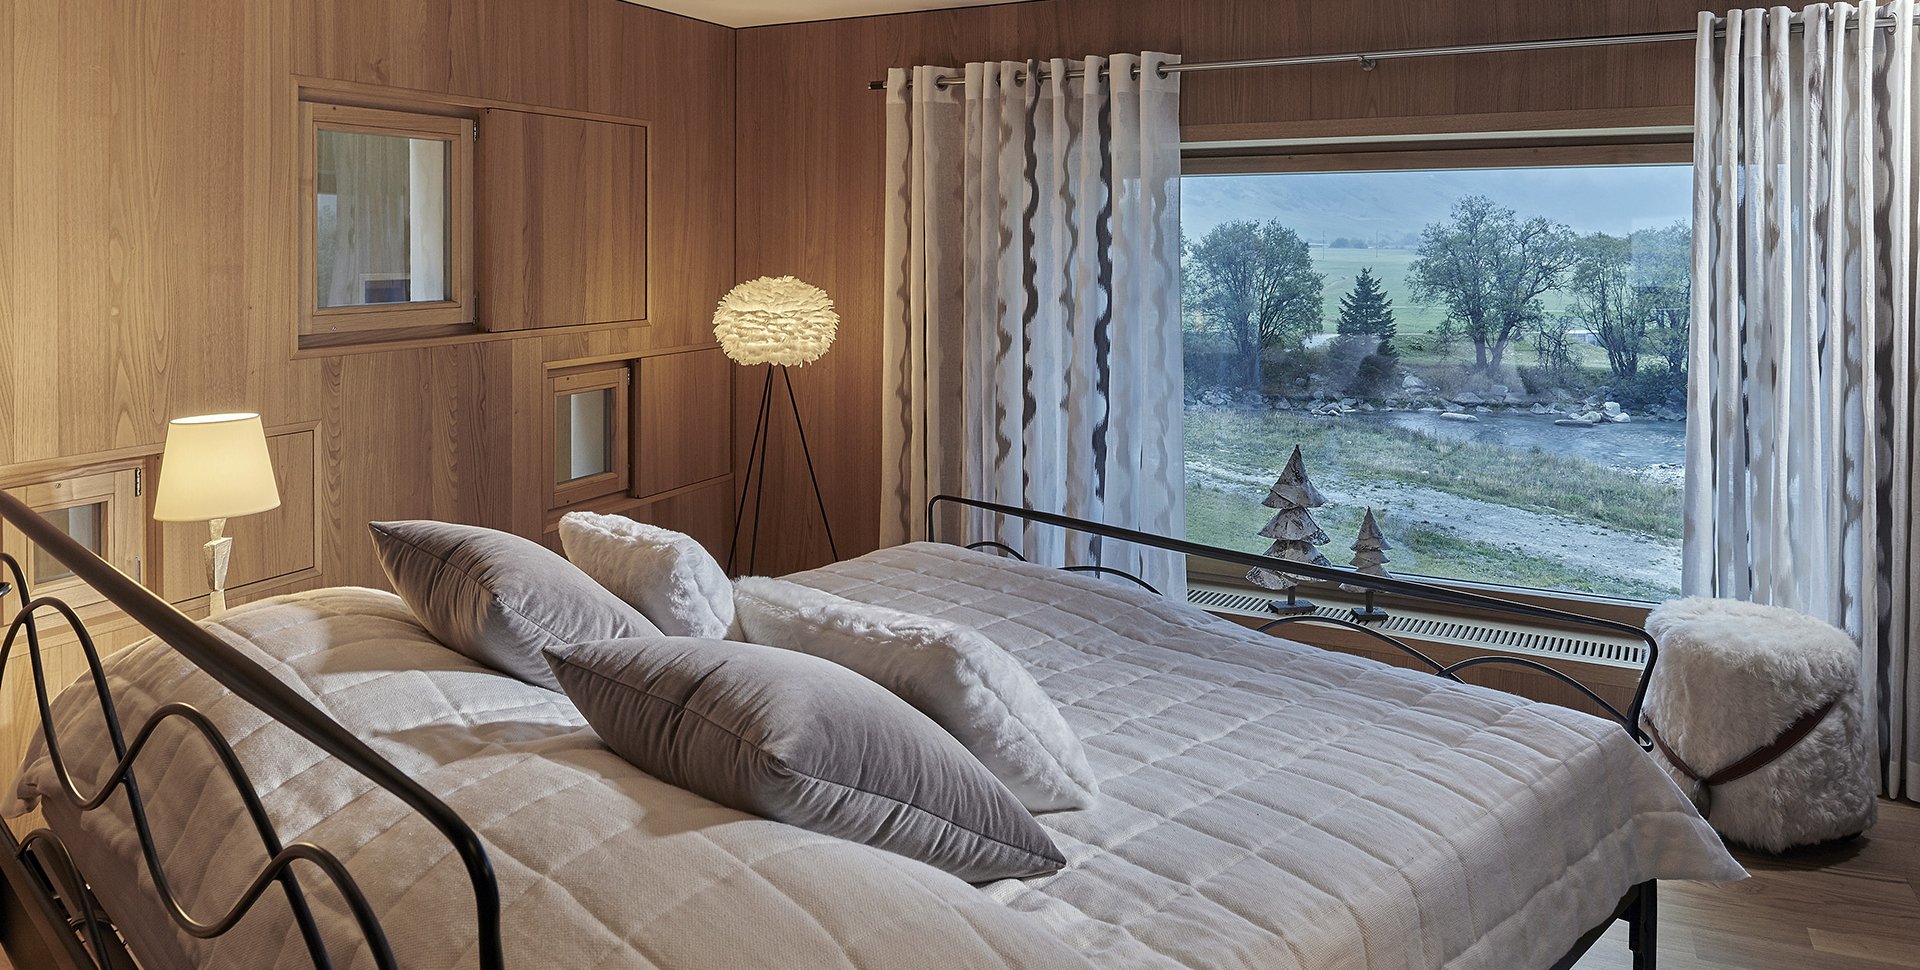 Chambre d'une villa luxueuse dans les Alpes par l'agence Borella Art Design